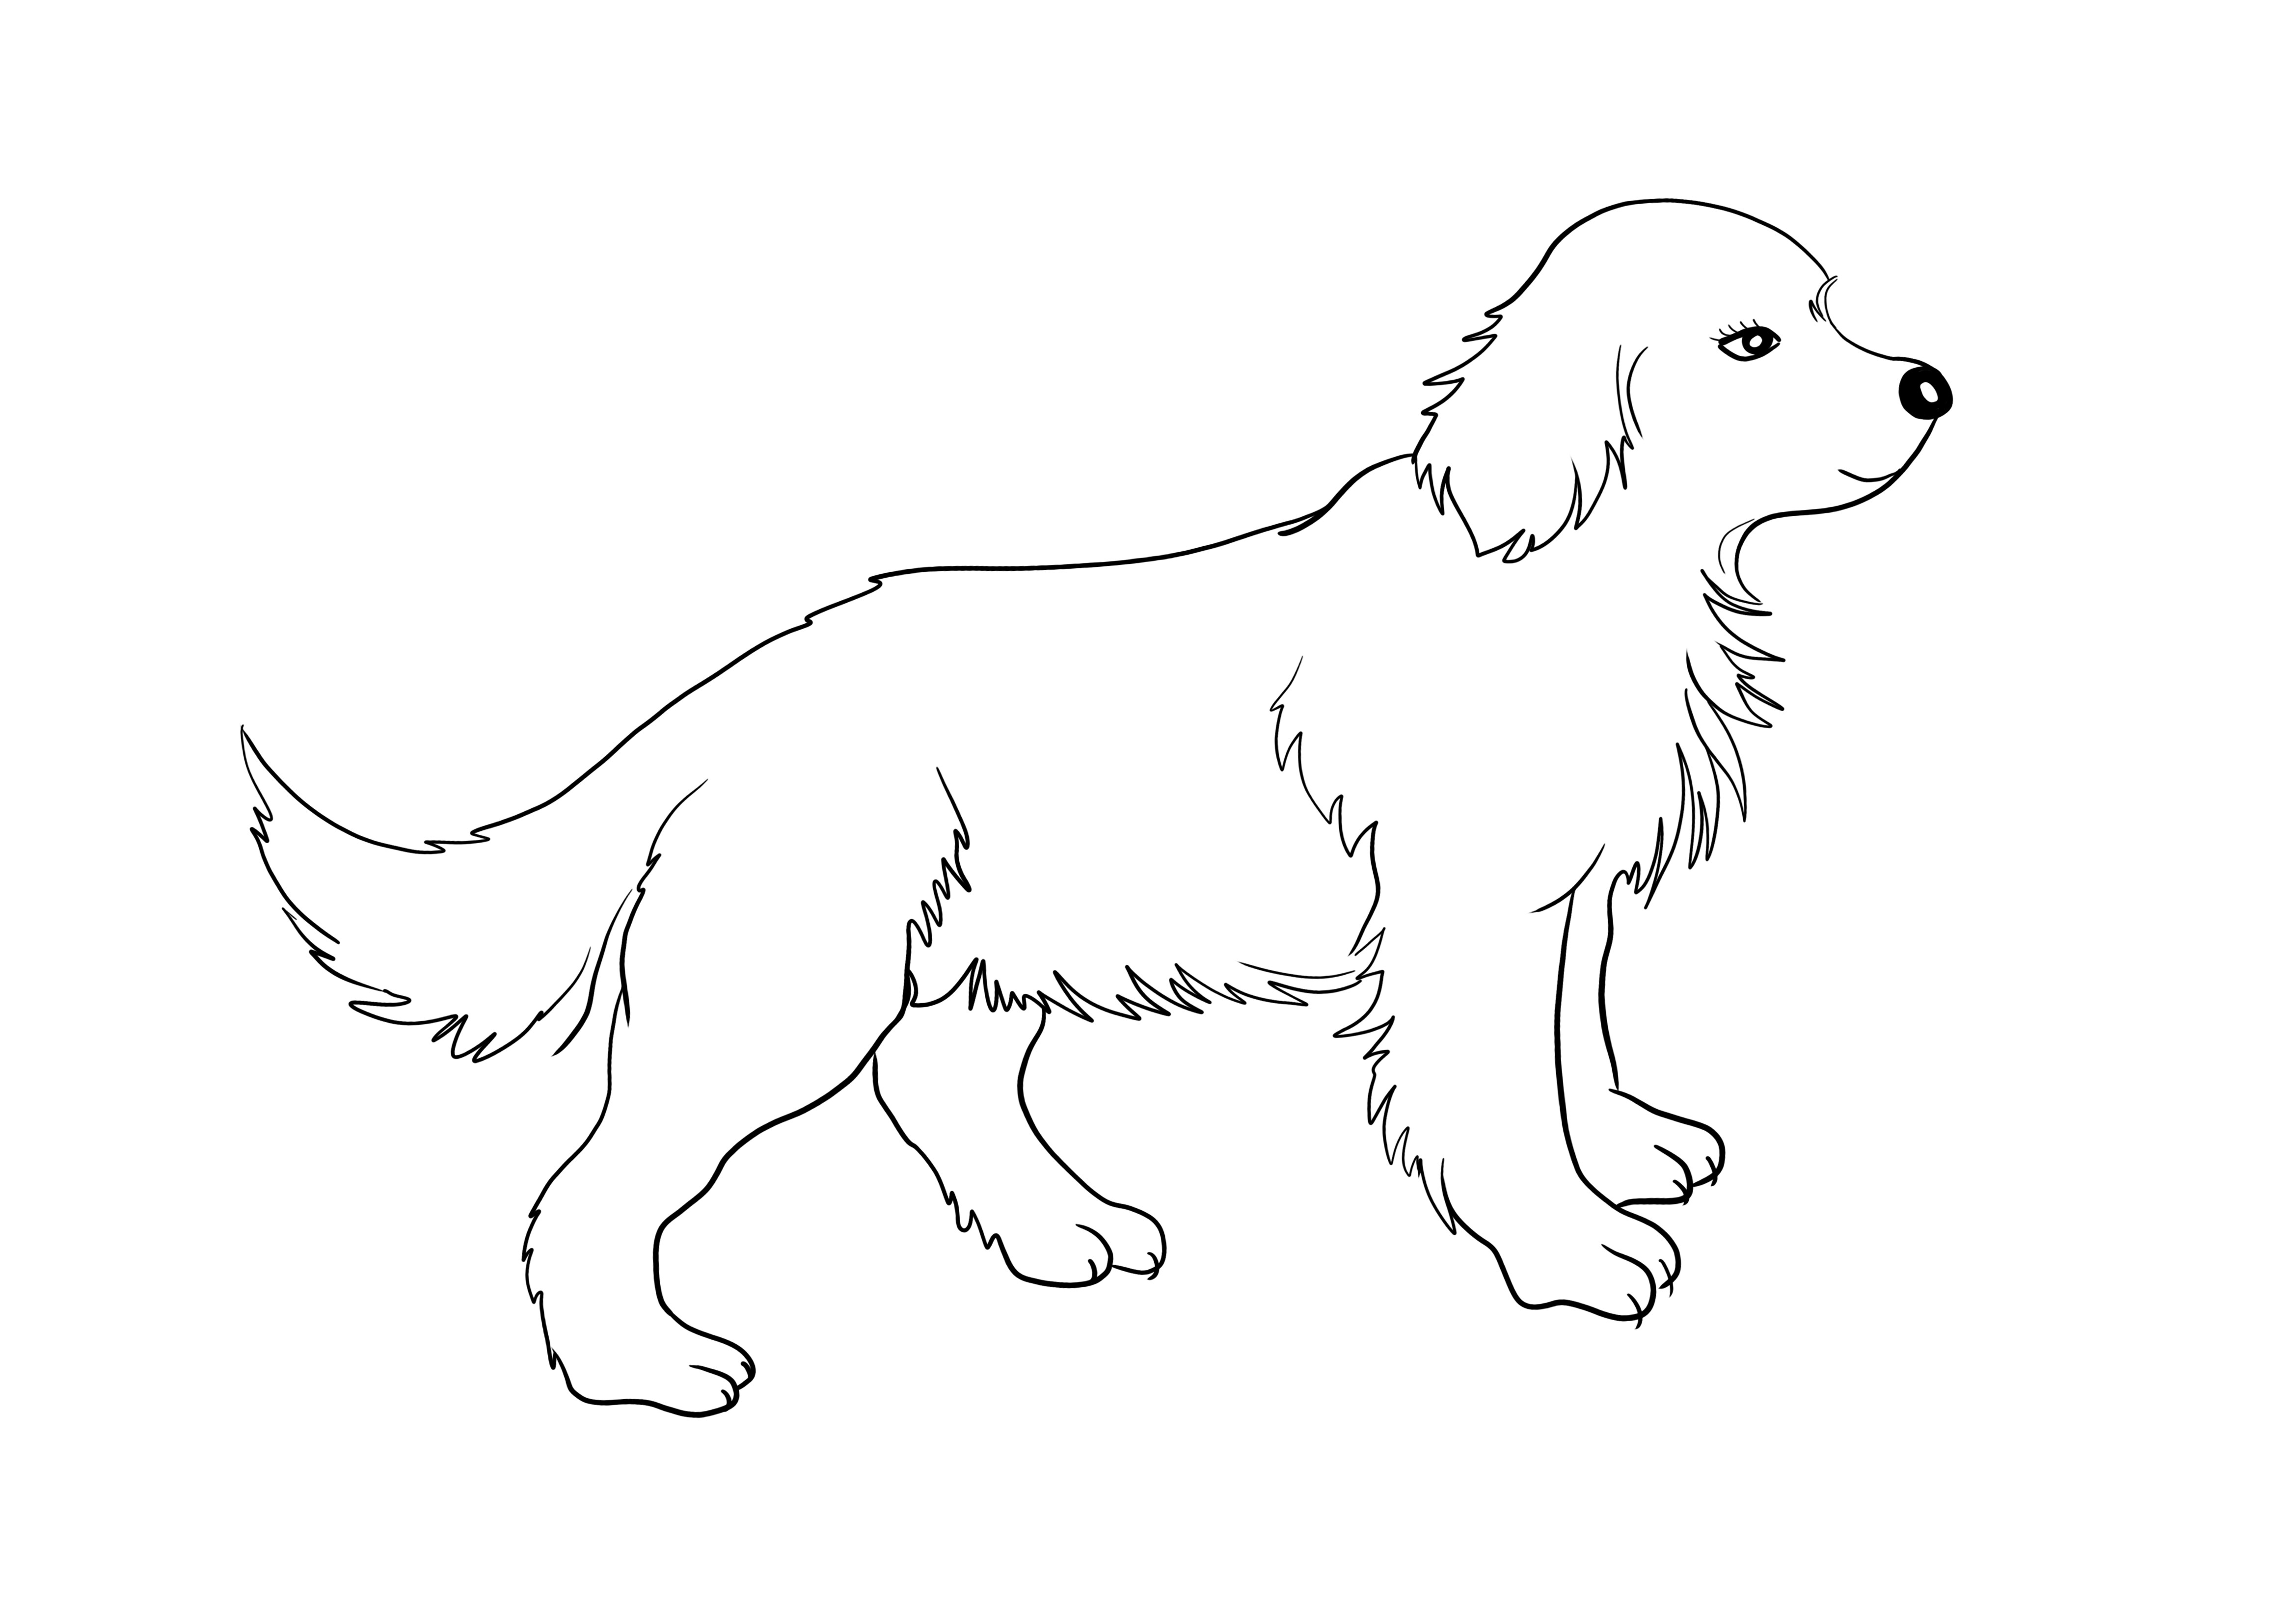 Cucciolo di Golden Retriever per il download gratuito e l'immagine da colorare